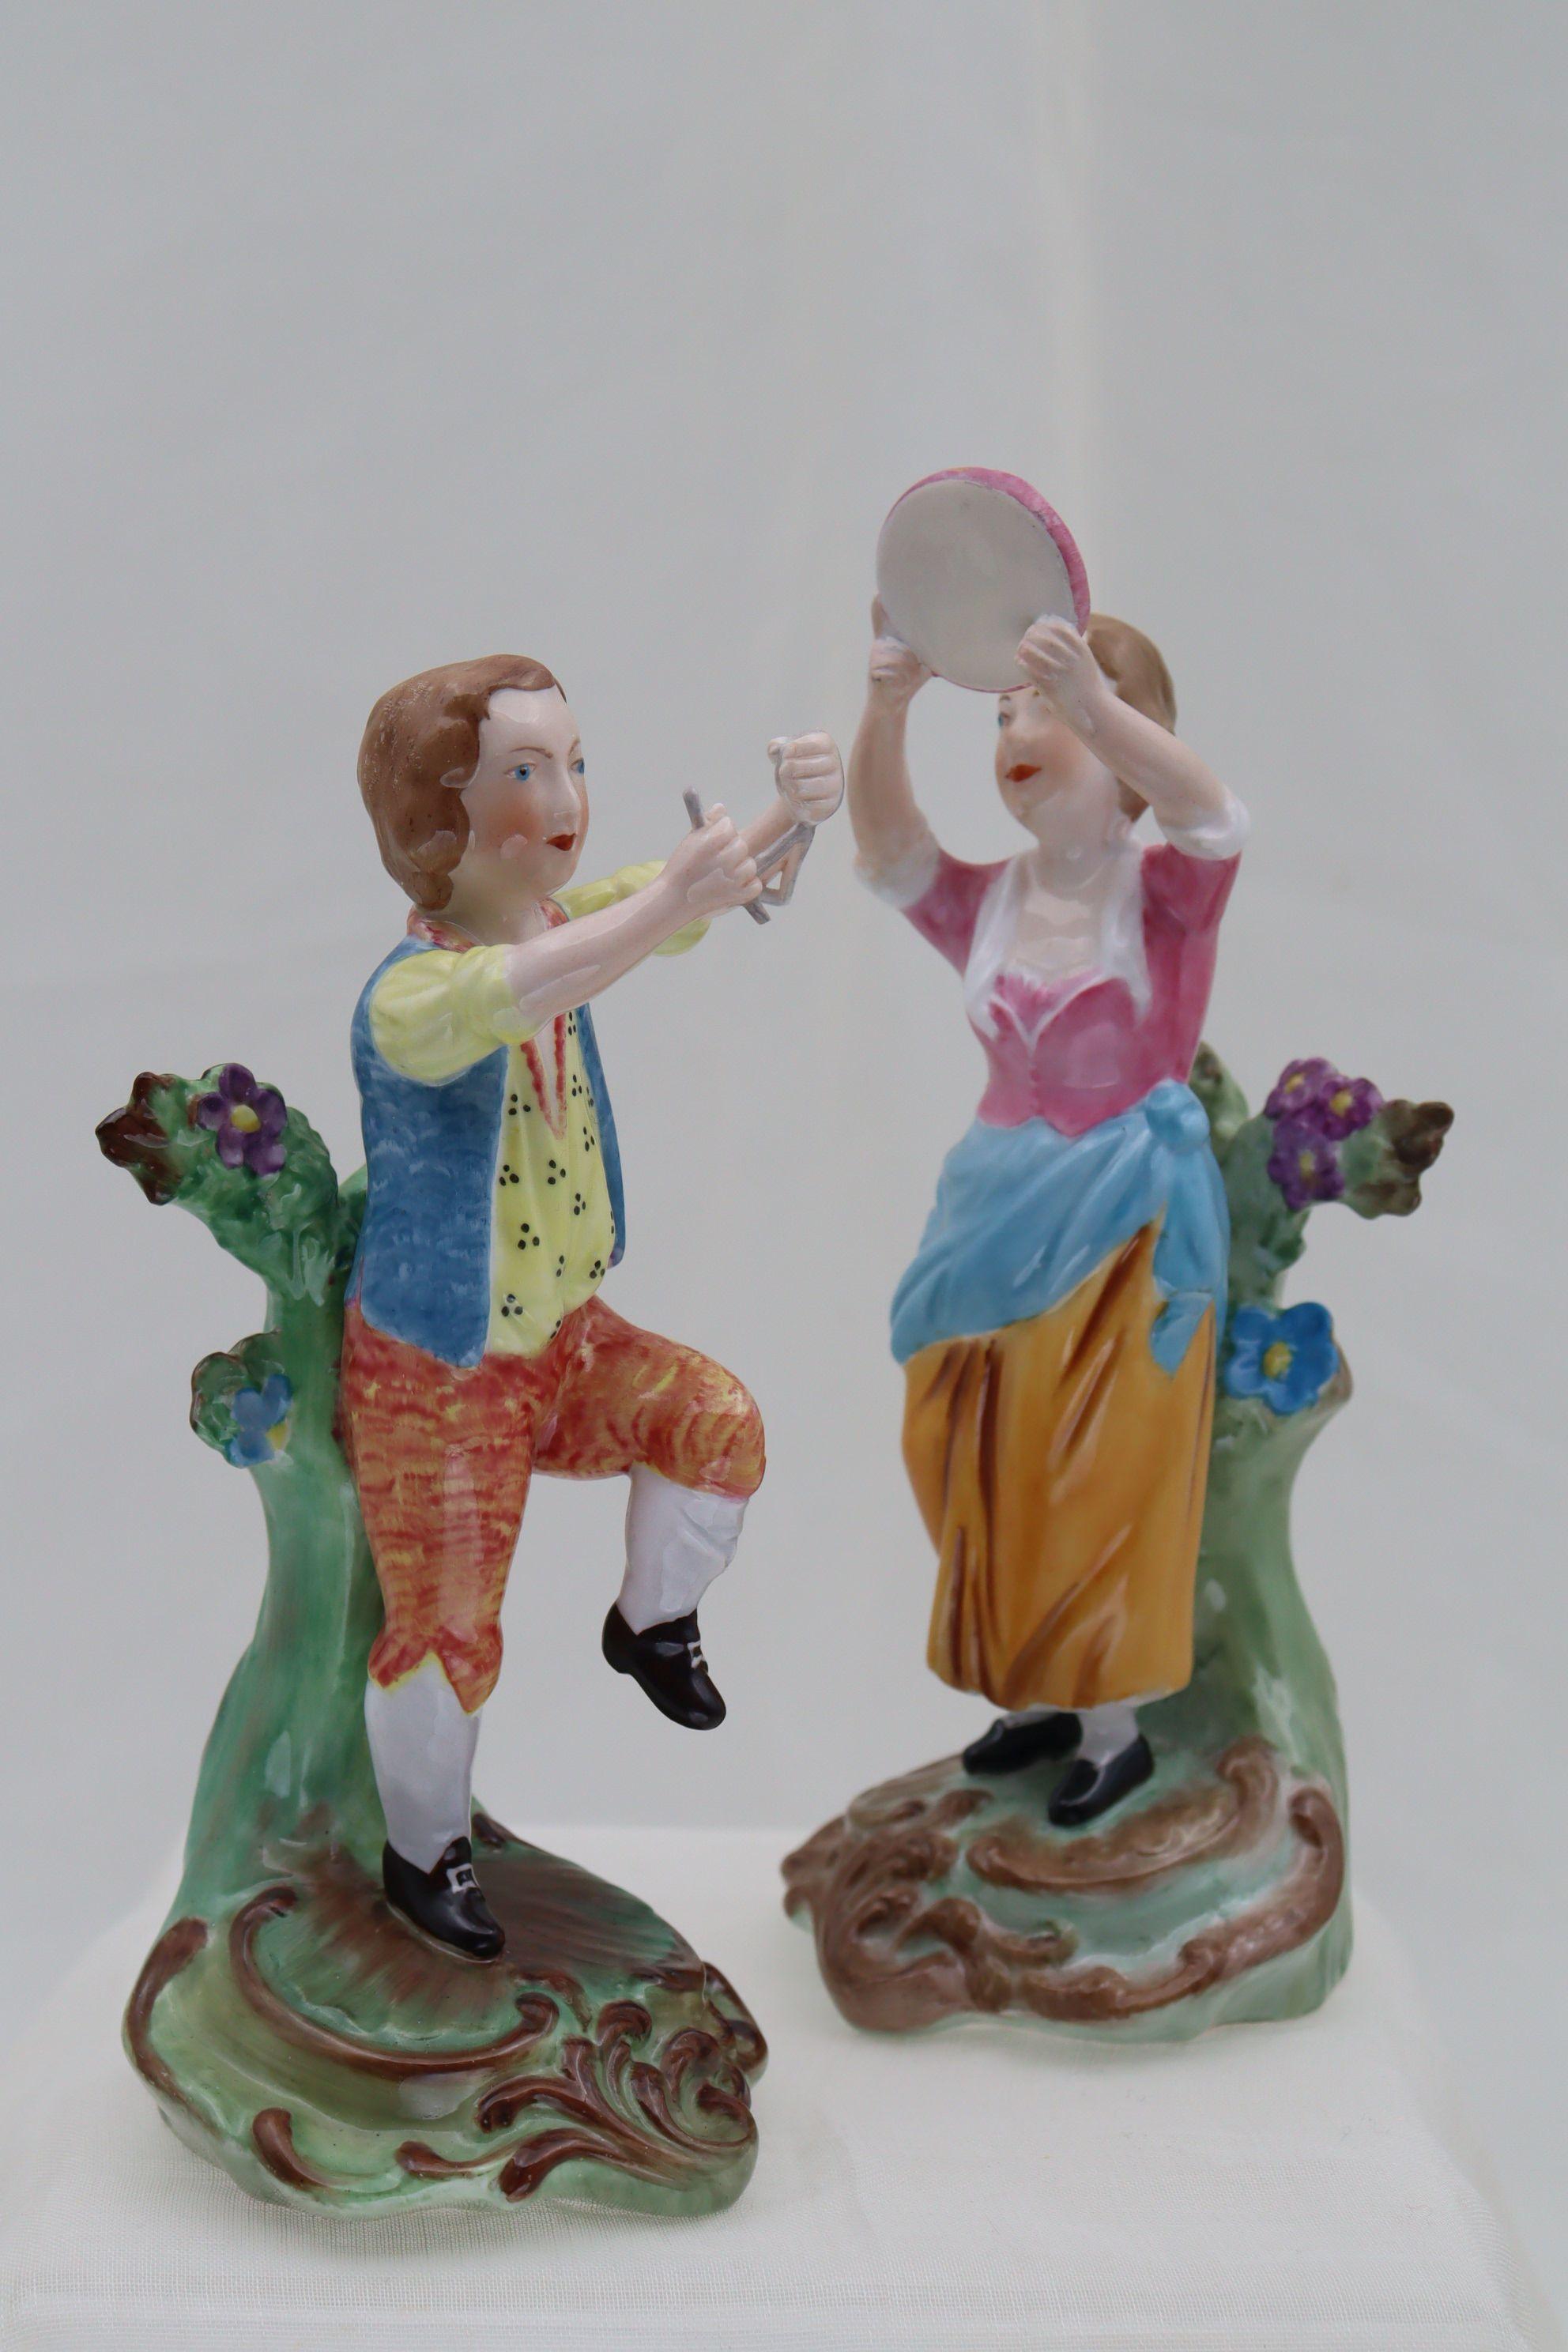 Diese beiden Porzellanfiguren gehörten zu einer Serie, die Copeland Spode 1933 zur Feier des zweihundertsten Geburtstages von Josiah Spode herausgab. Für diese Serie verwendete Spode die Originalformen der Chelsea-Fabrik aus den späten 1700er